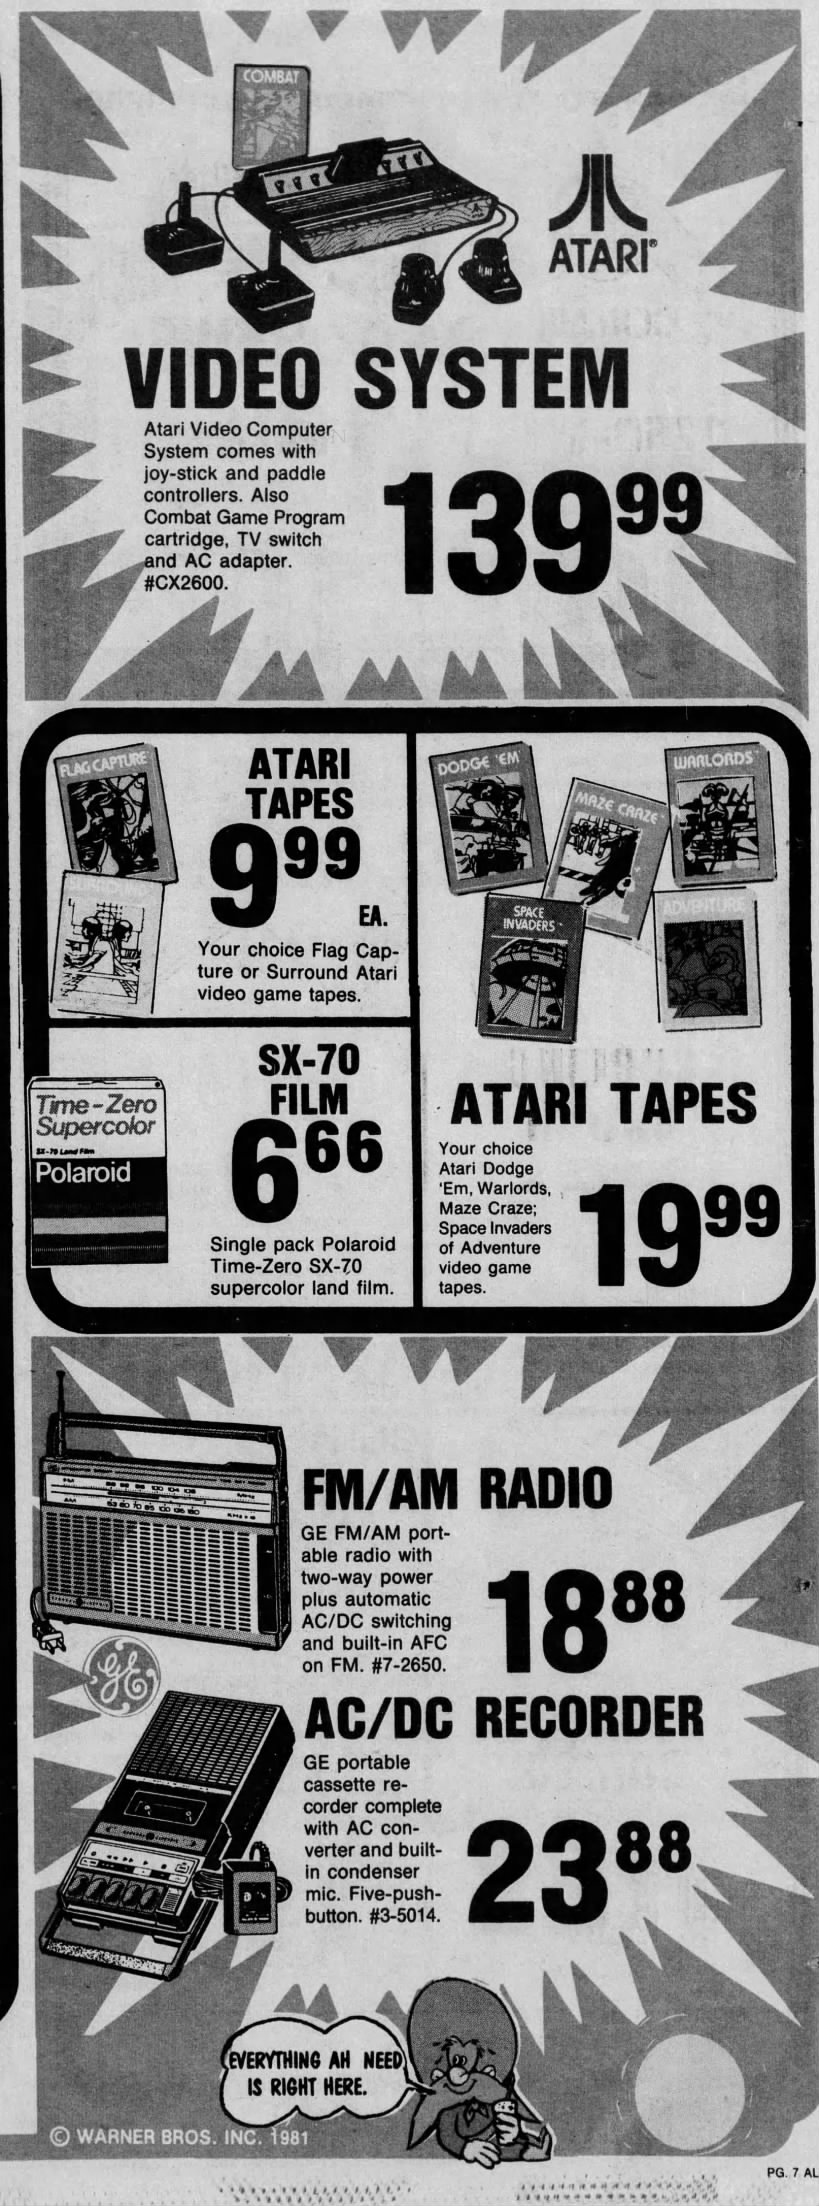 Atari 2600: SKAGGS (Jul 15, 81)